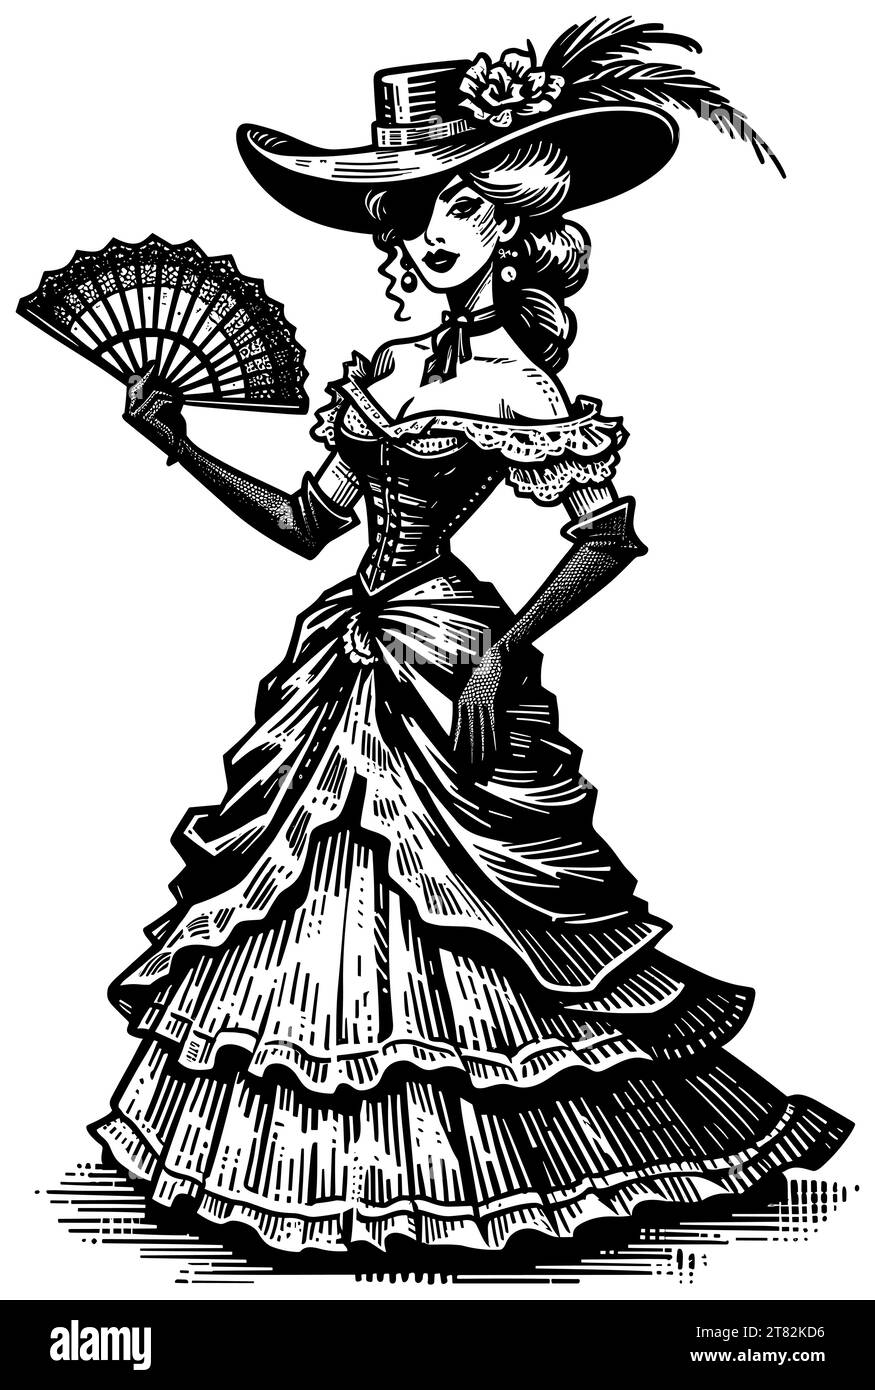 Illustrazione in stile Linocut di una bella donna del selvaggio West americano. Illustrazione Vettoriale